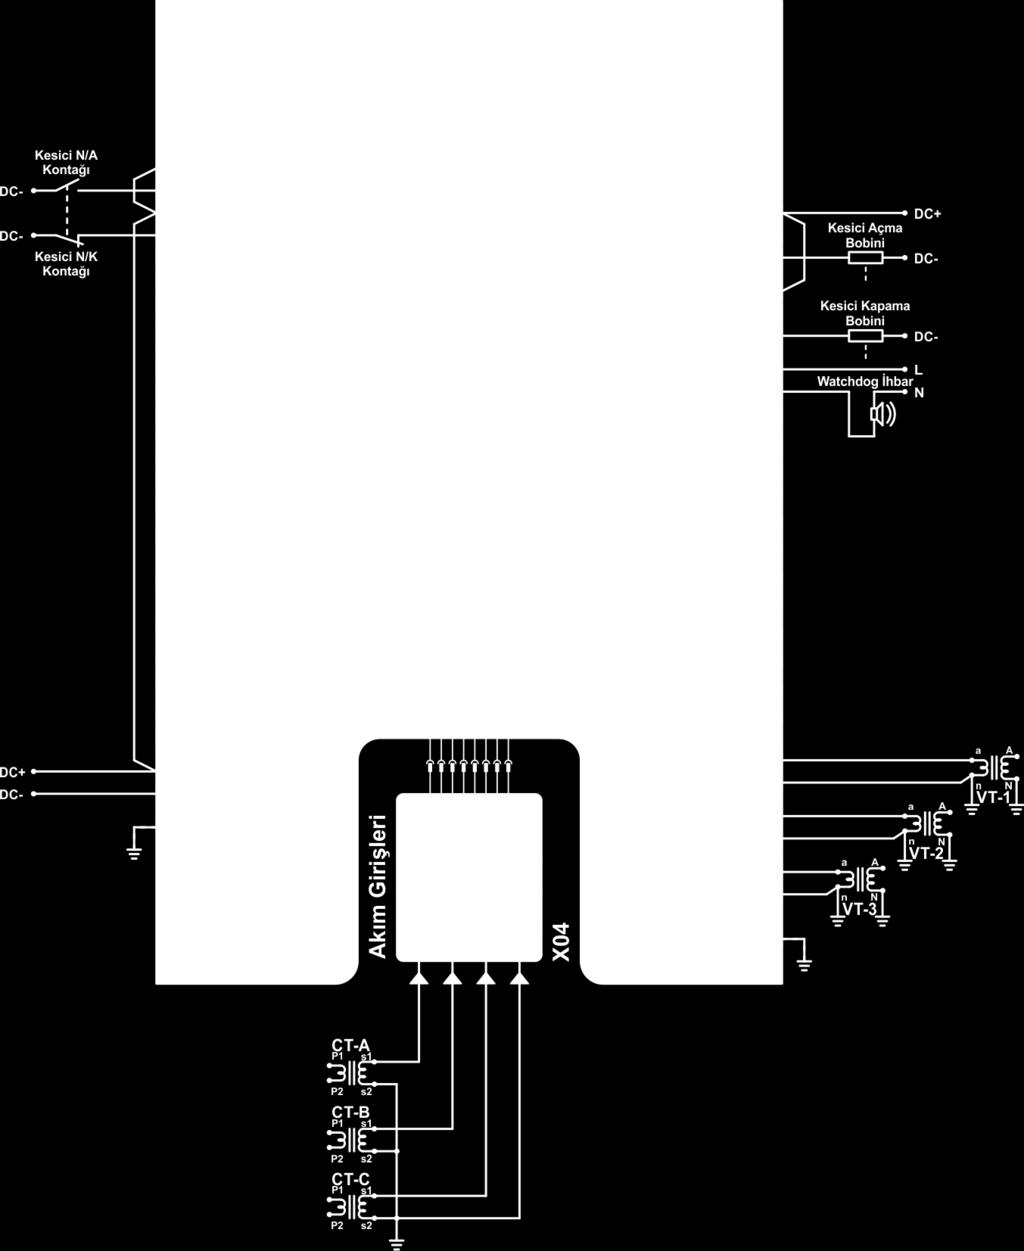 Ö rnek Uyğulama Şeması Aşağıdaki uygulama şeması DPM 400-D modeli için örnek temel bağlantı şeması olarak